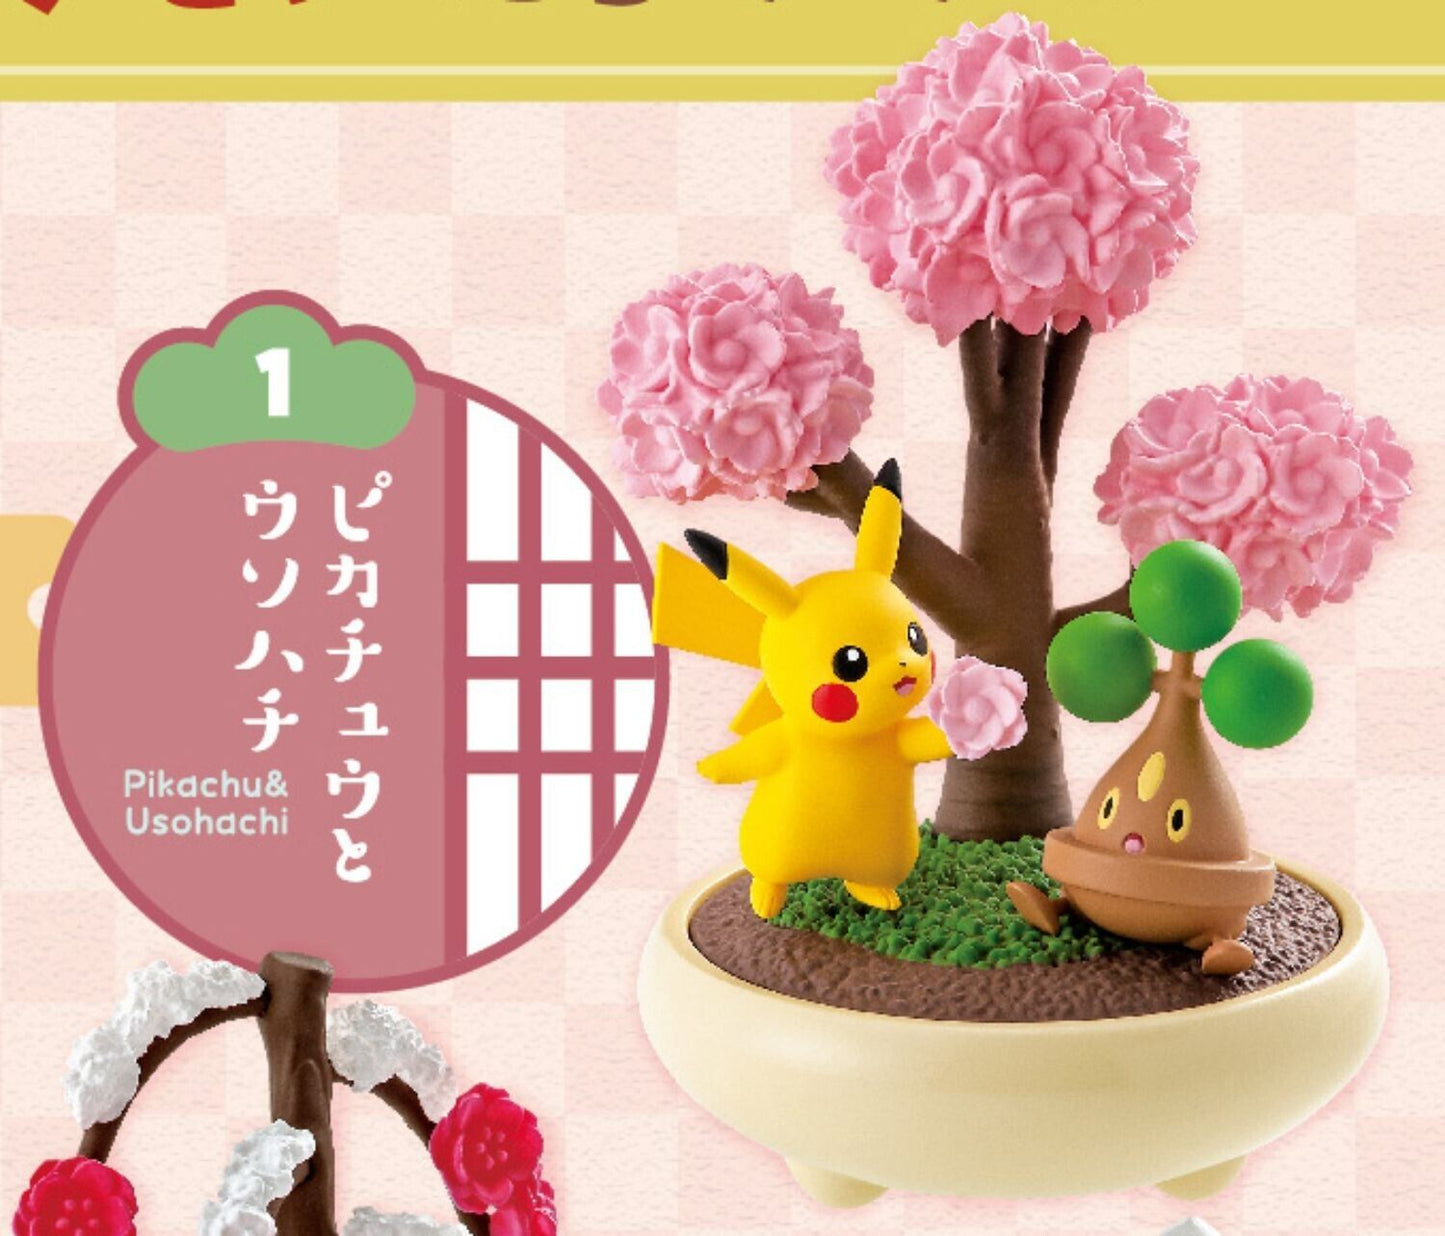 Re-Ment  Pokemon Pocket Bonsai 2 Seasons Story Mini Figure Full Set 6 pcs Rement